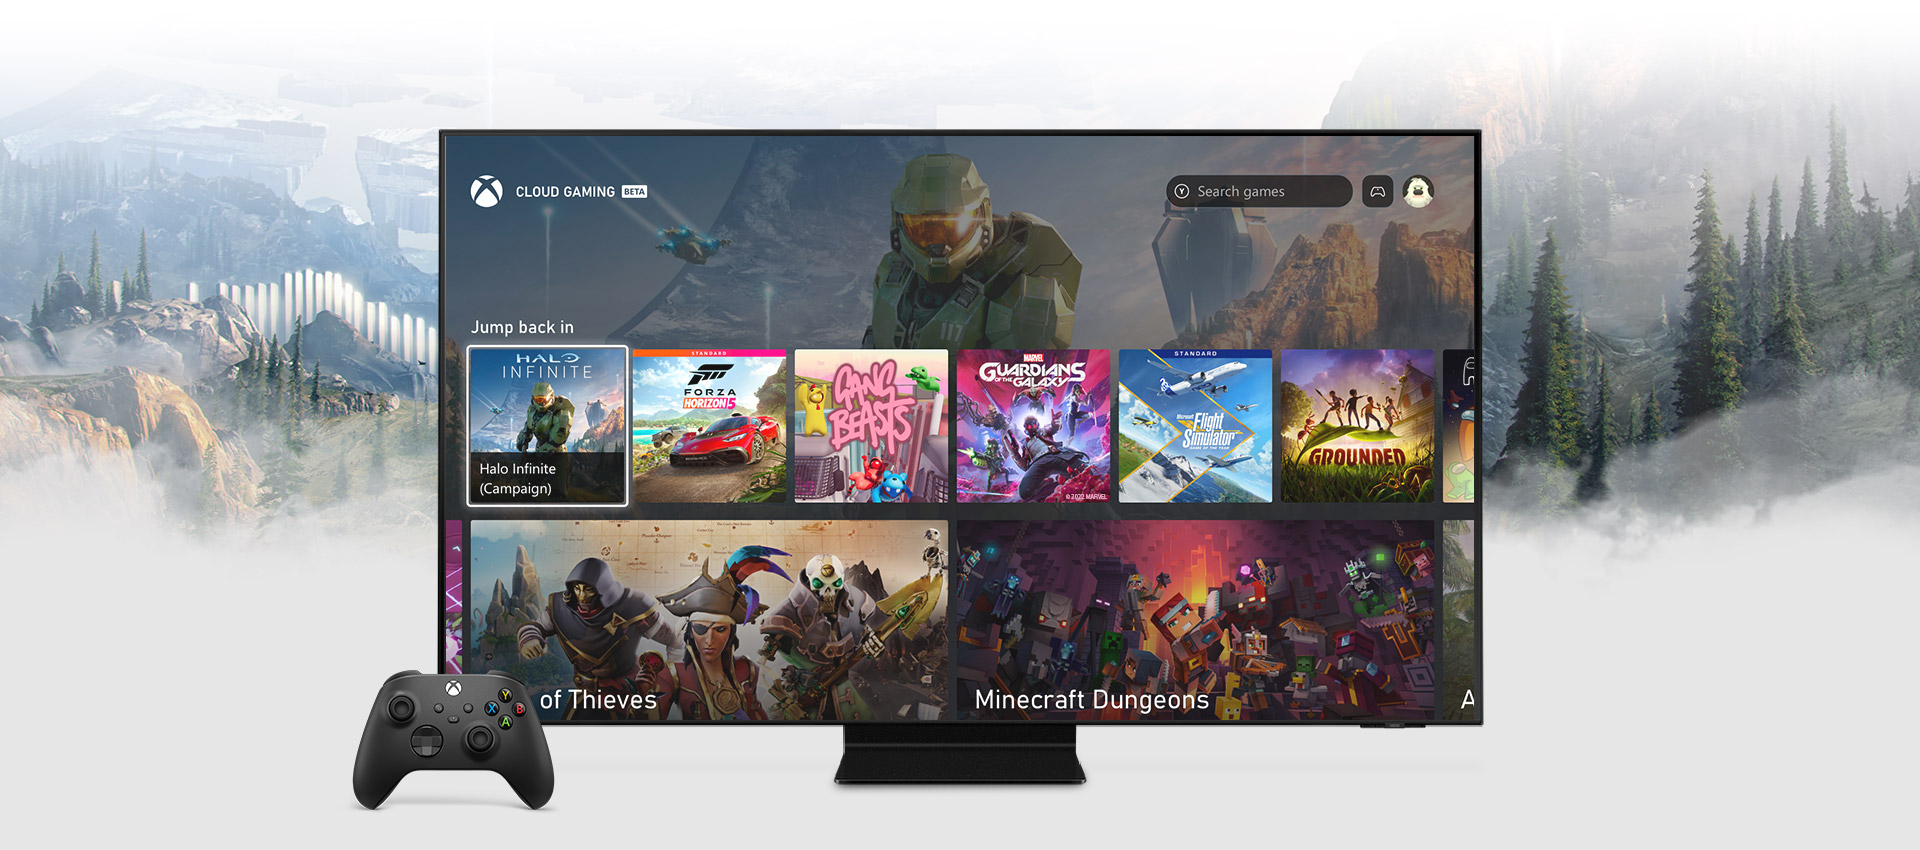 Schermata iniziale dell'app Xbox su una Smart TV Samsung